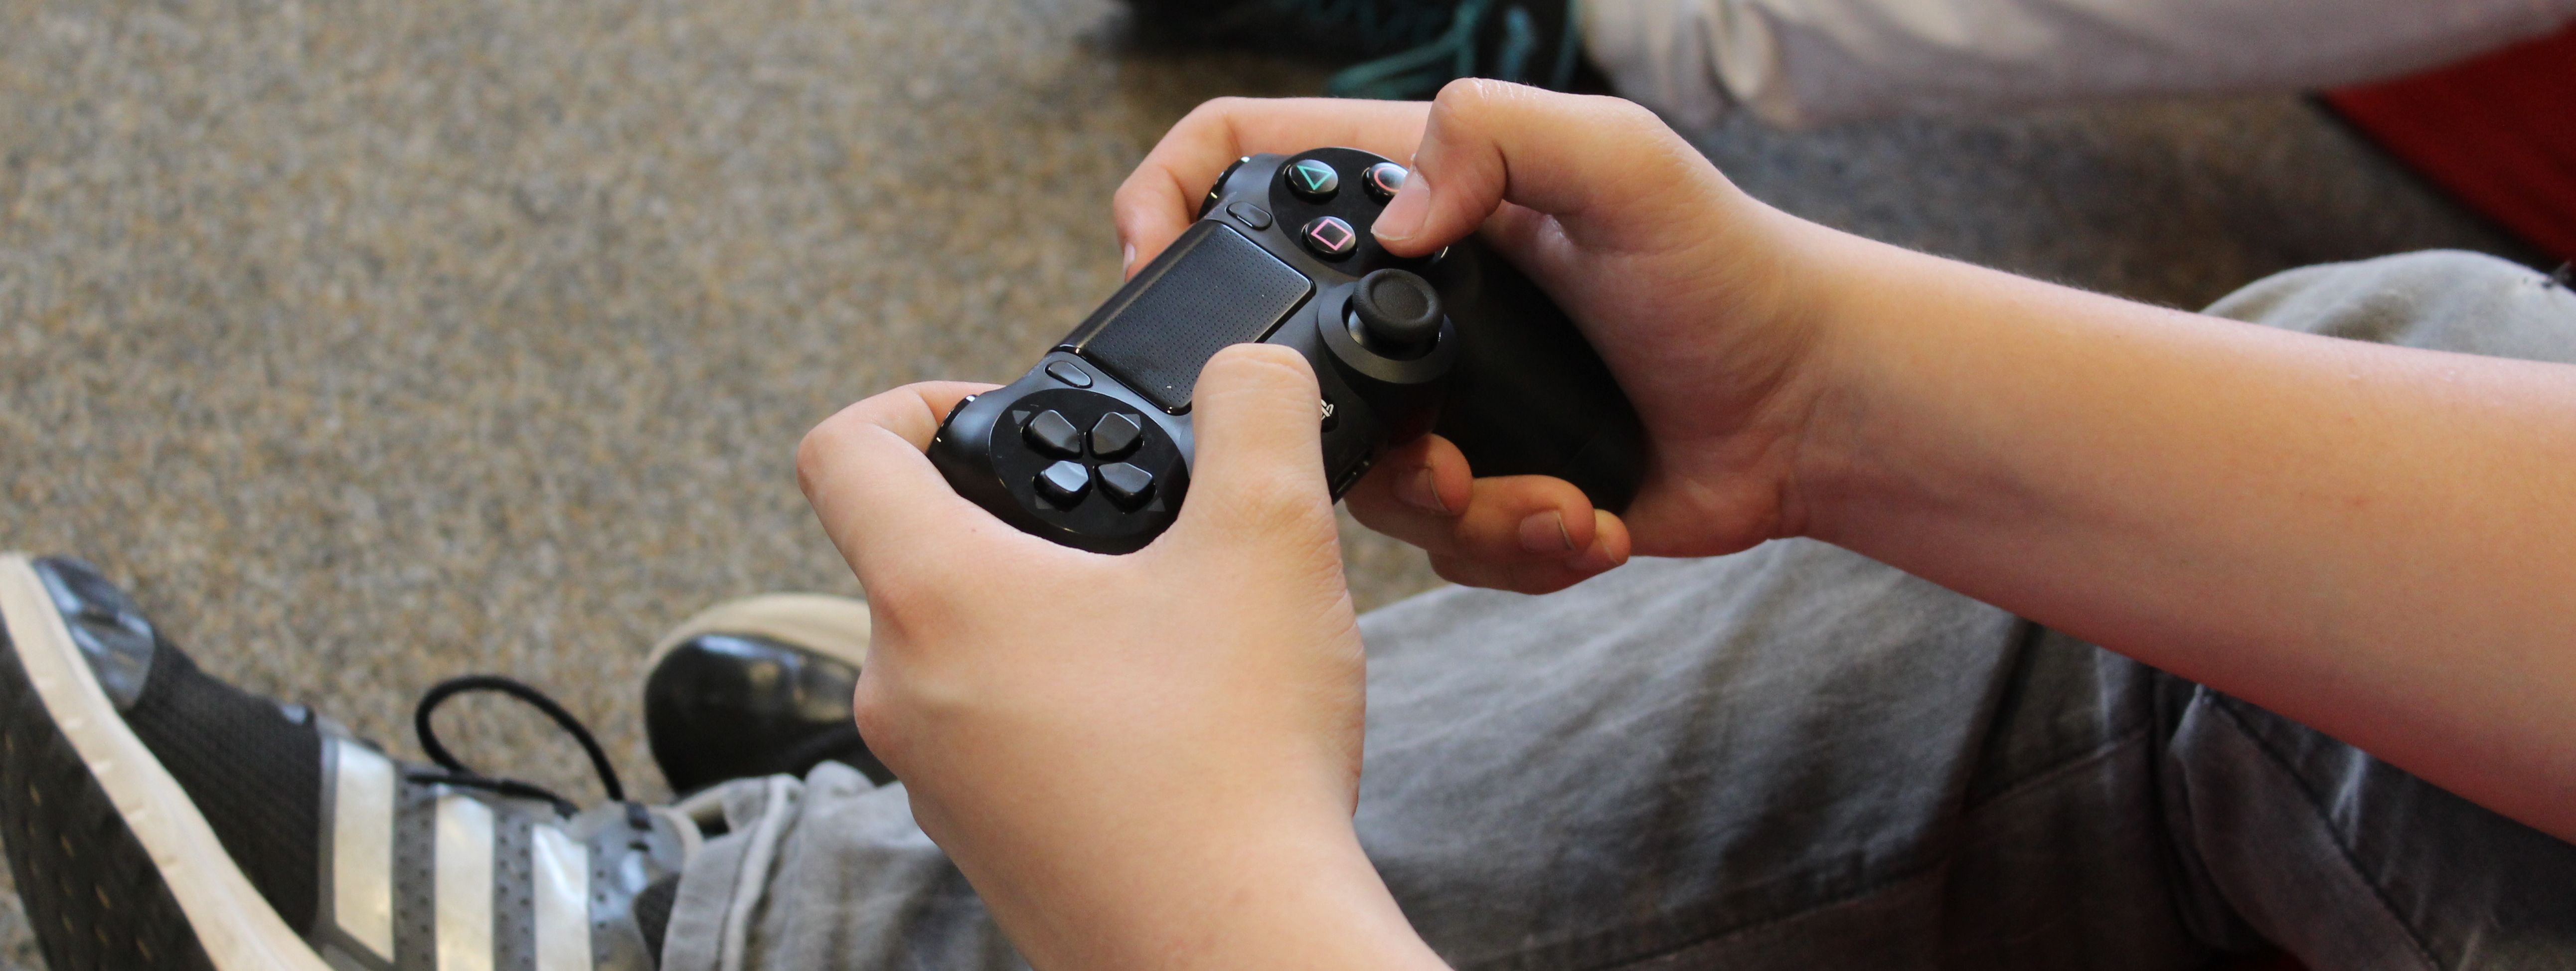 Zwei Hände mit einem Controler für eine Playstation